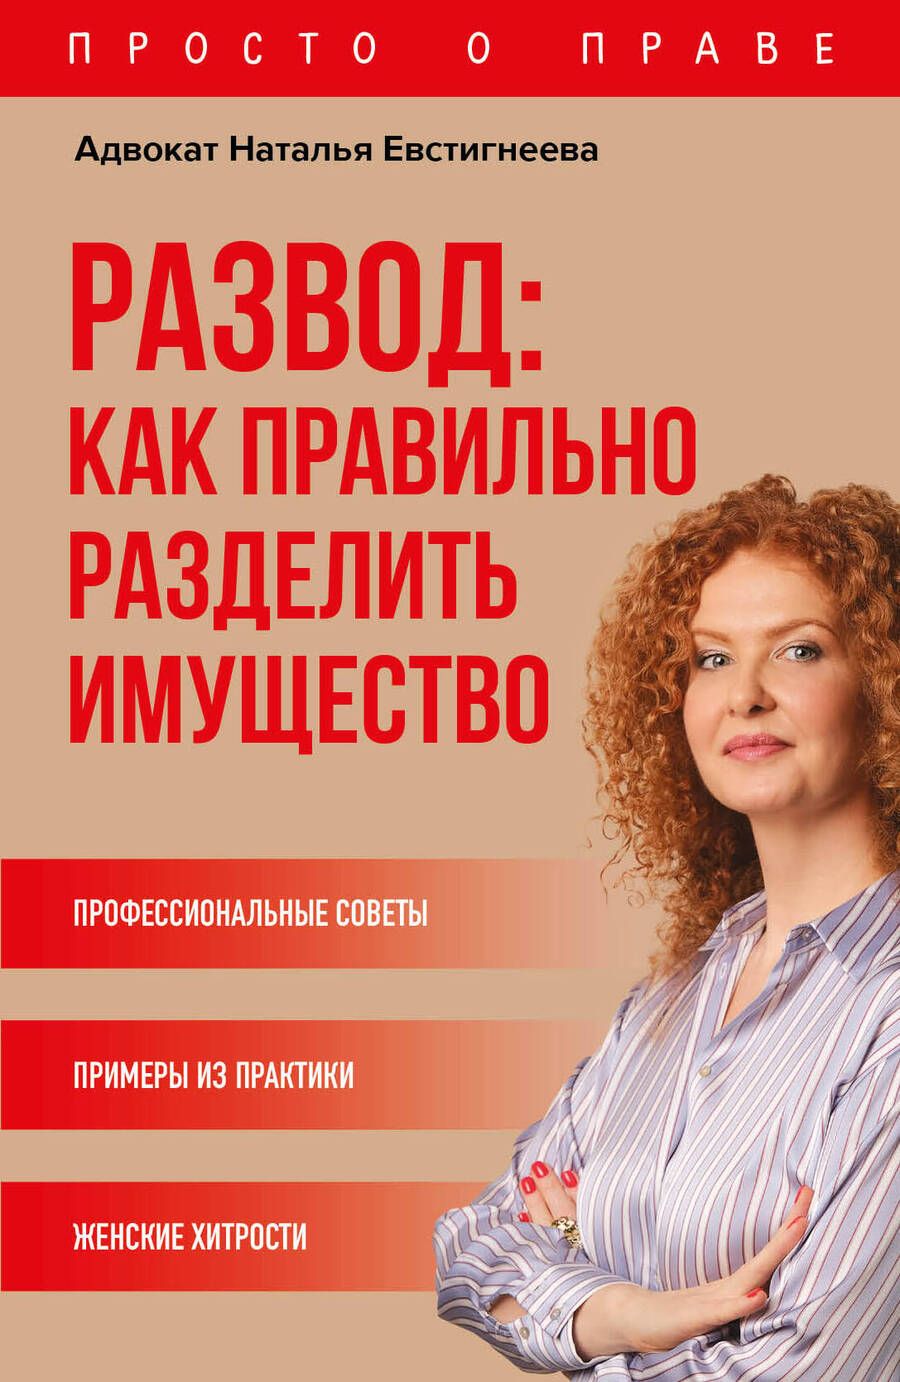 Обложка книги "Наталья Евстигнеева: Развод: как правильно разделить имущество"